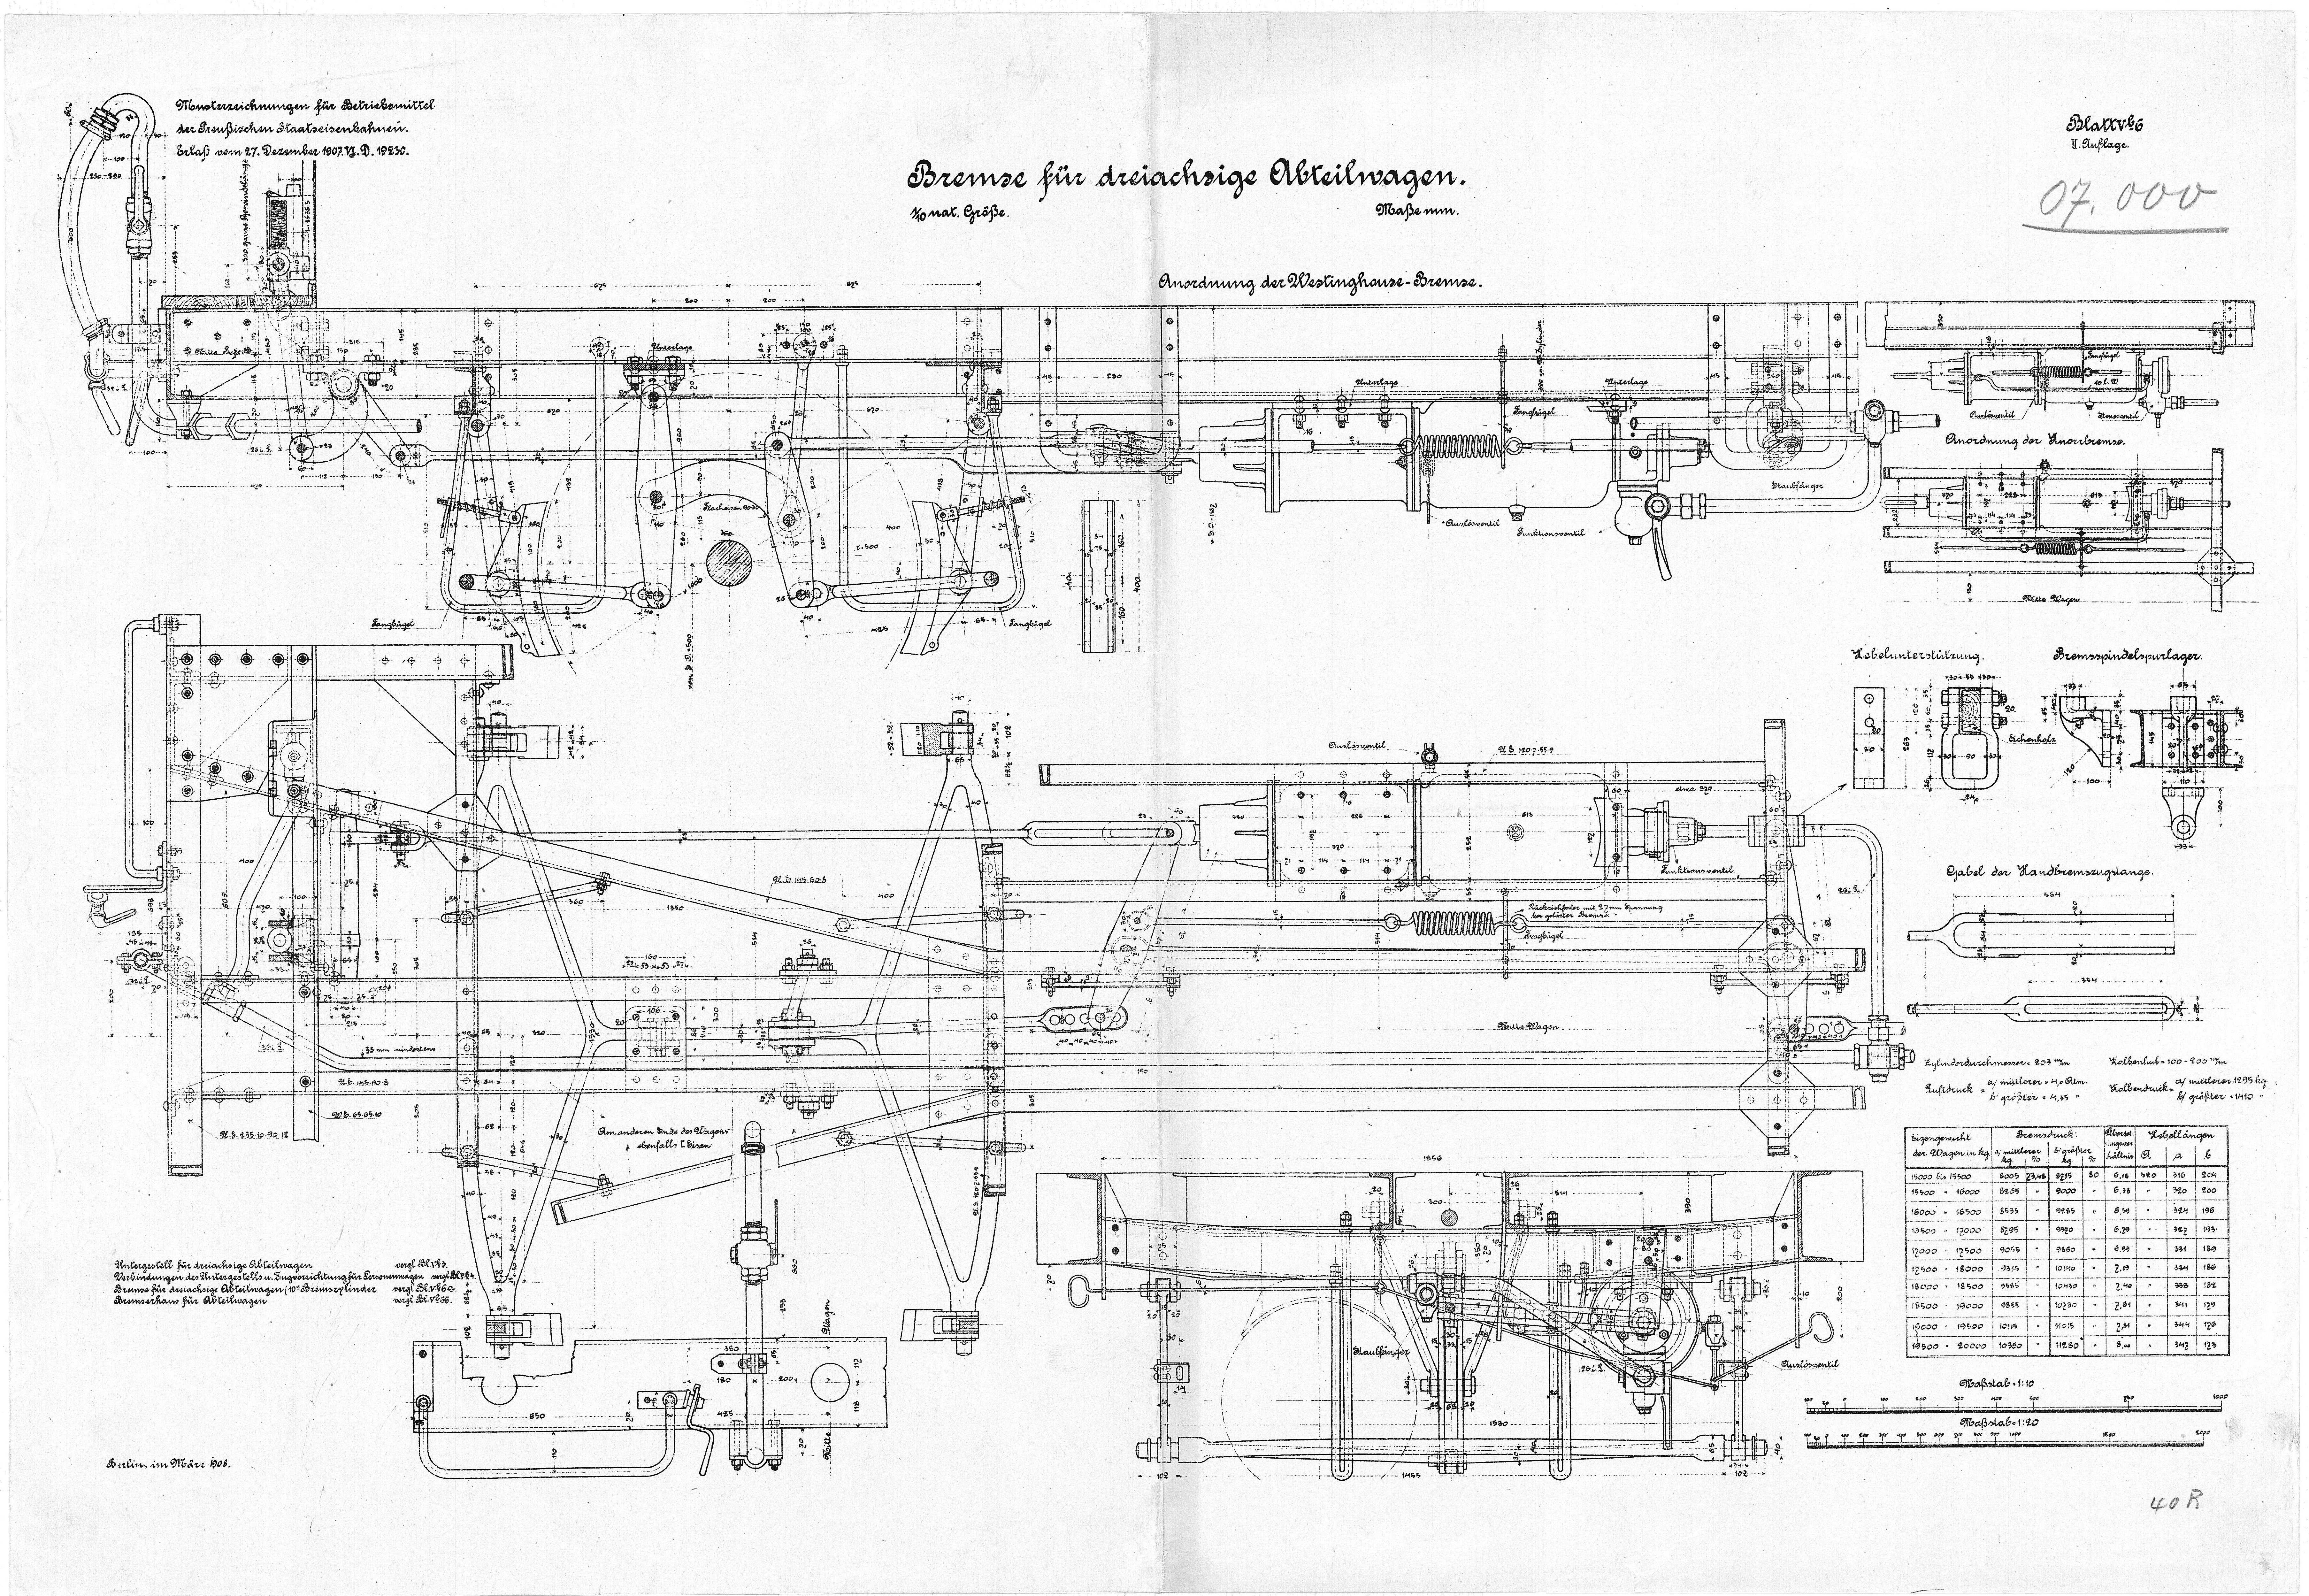 Konstruktionszeichnung Detailzeichnung Bremse für dreiachsige Abteilwagen. Preussische Staatseisenbahnen, 1908. (Verkehrsmuseum Dresden CC BY-NC-SA)